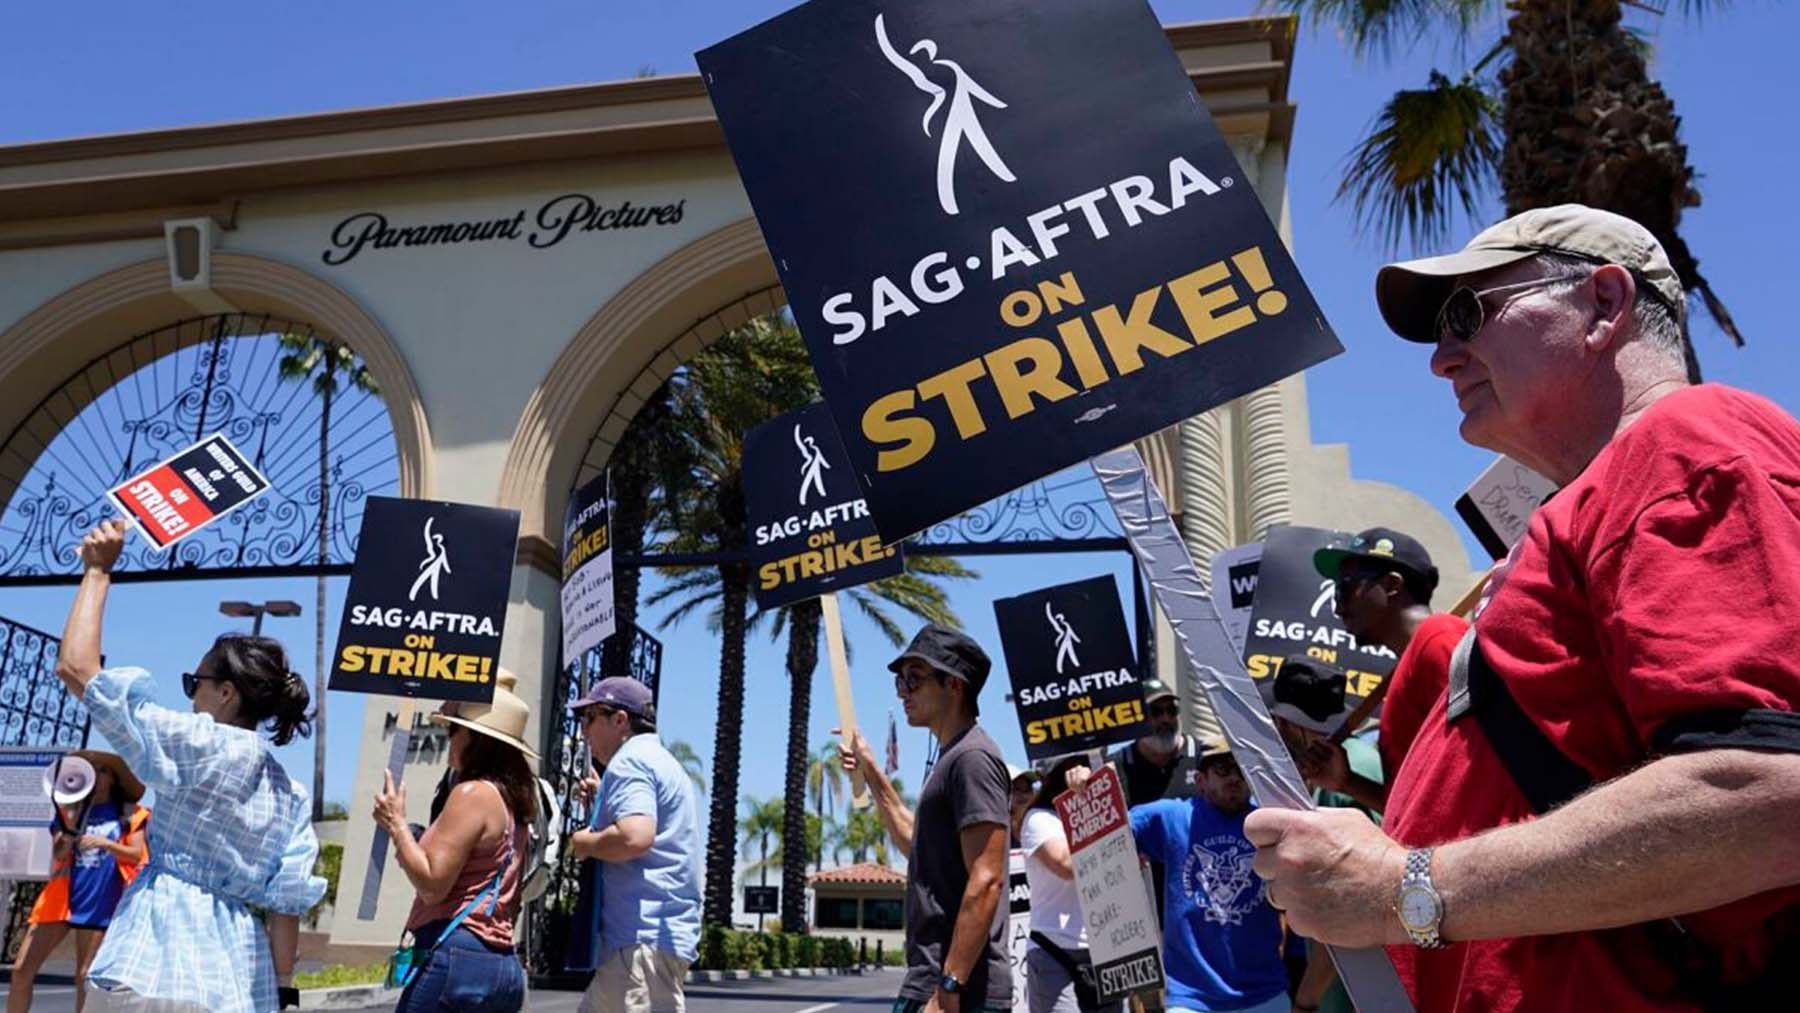 El SAG AFTRA protesta frente a los principales estudios de Hollywood